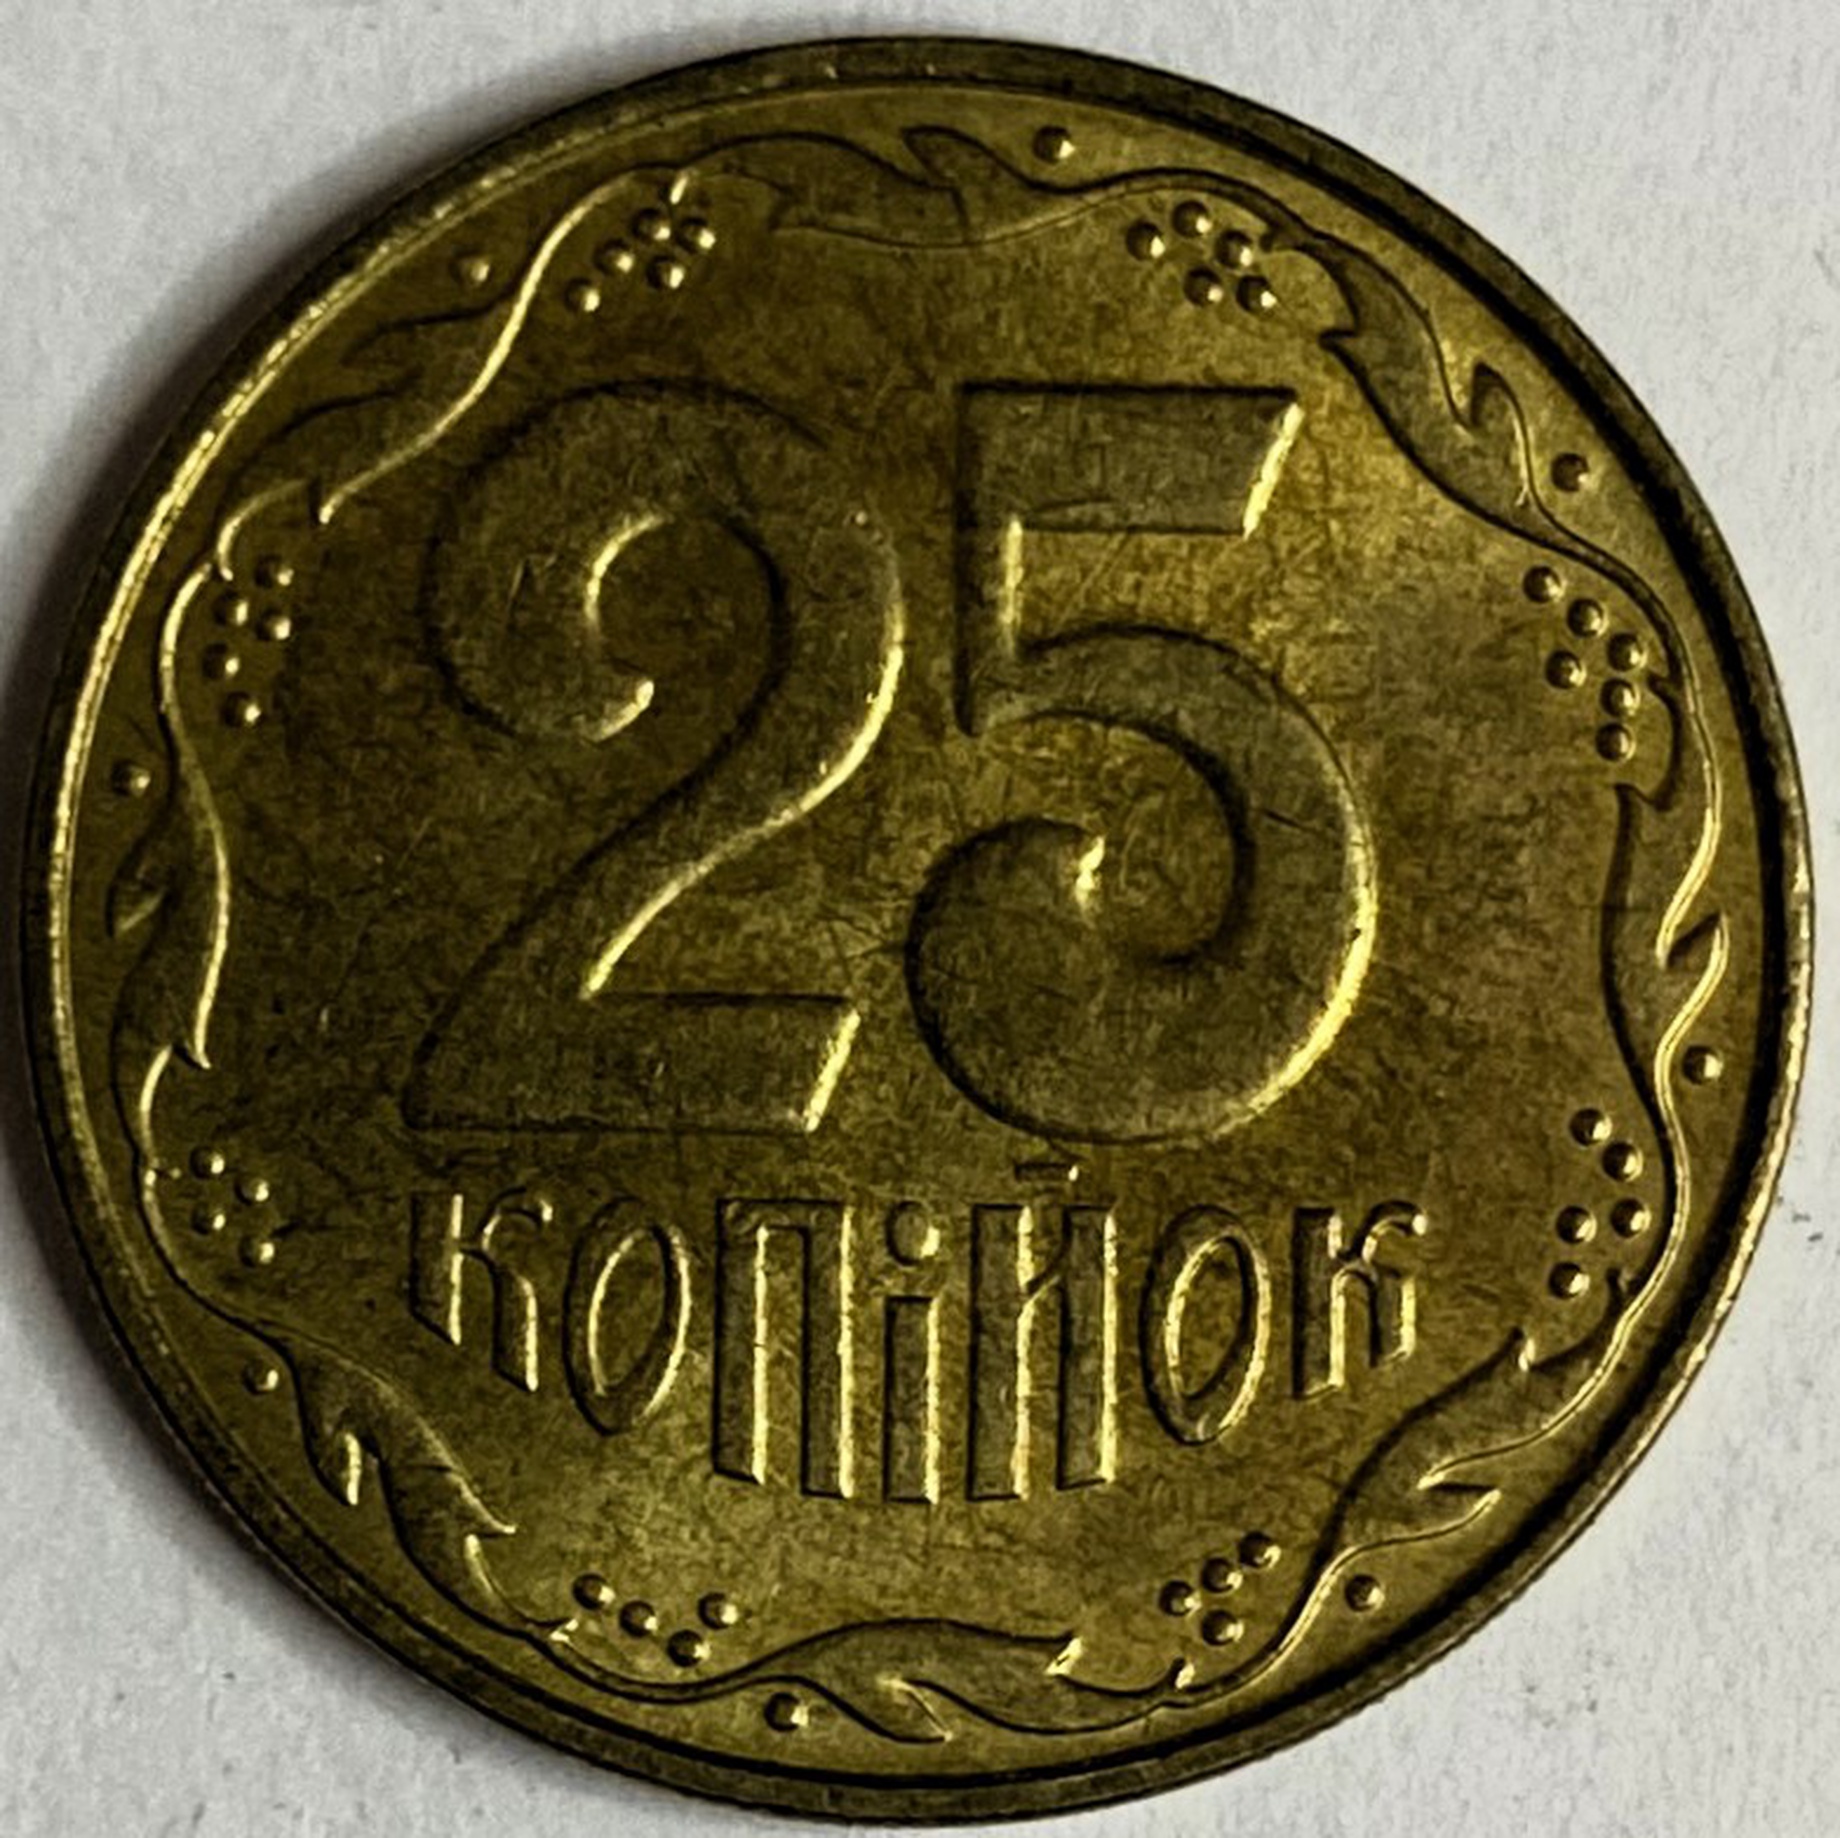 Иностранная монета 25 копеек Украина 2010 год